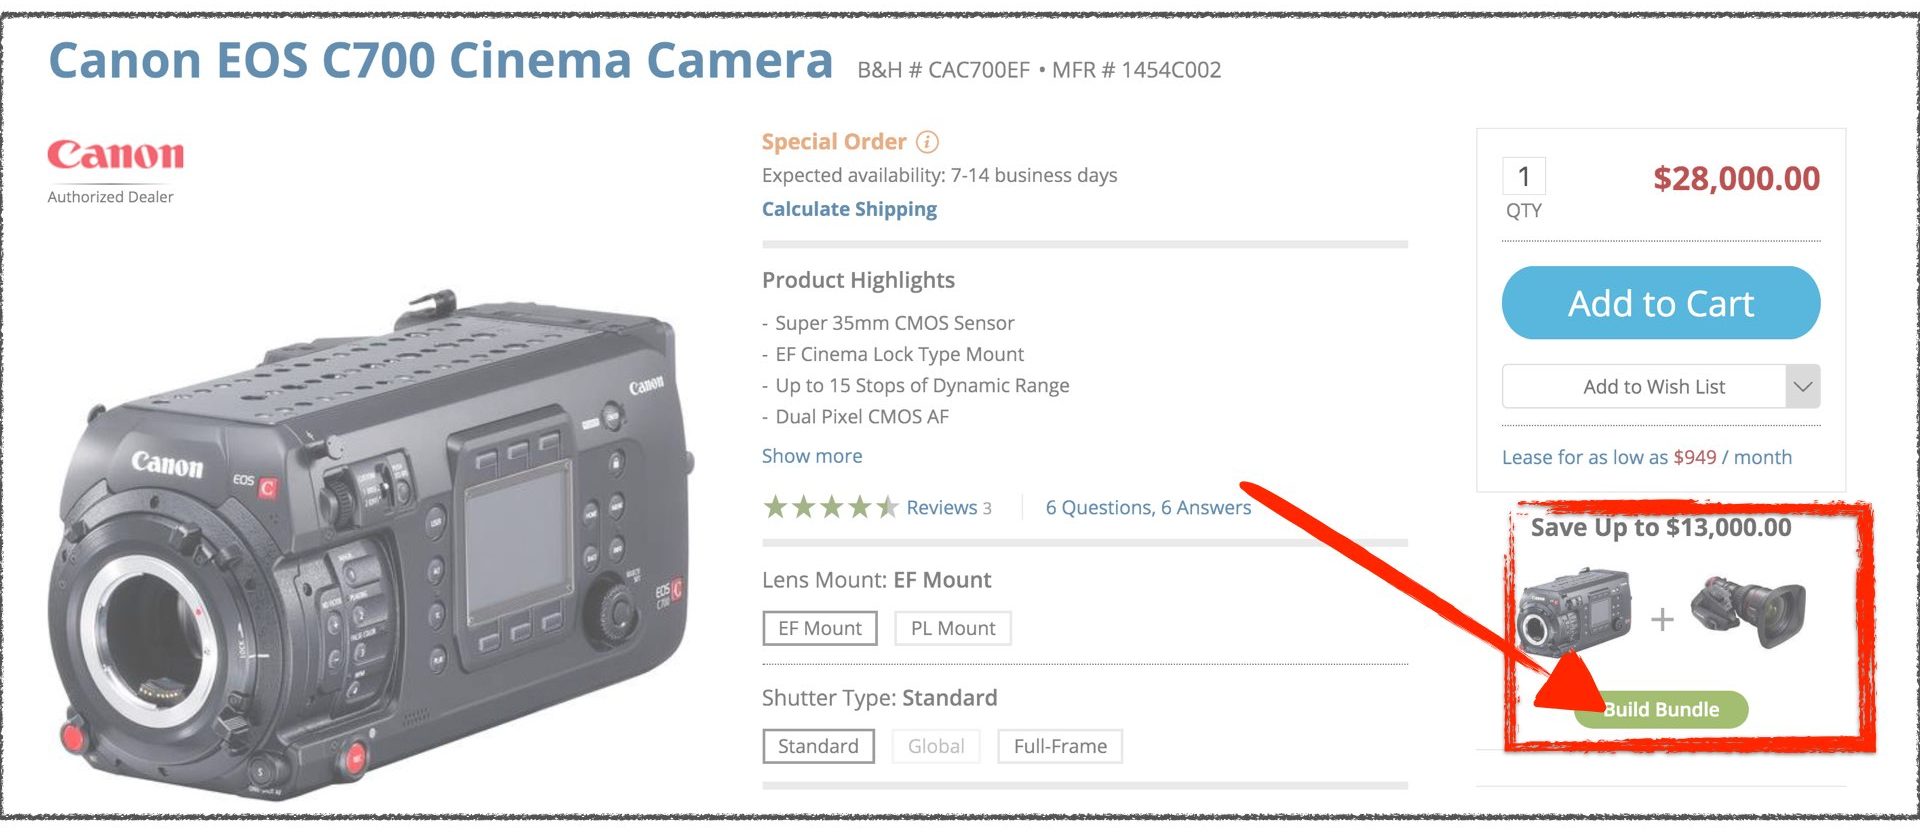 Canon C700 sale - Press on “Build Bundle” button